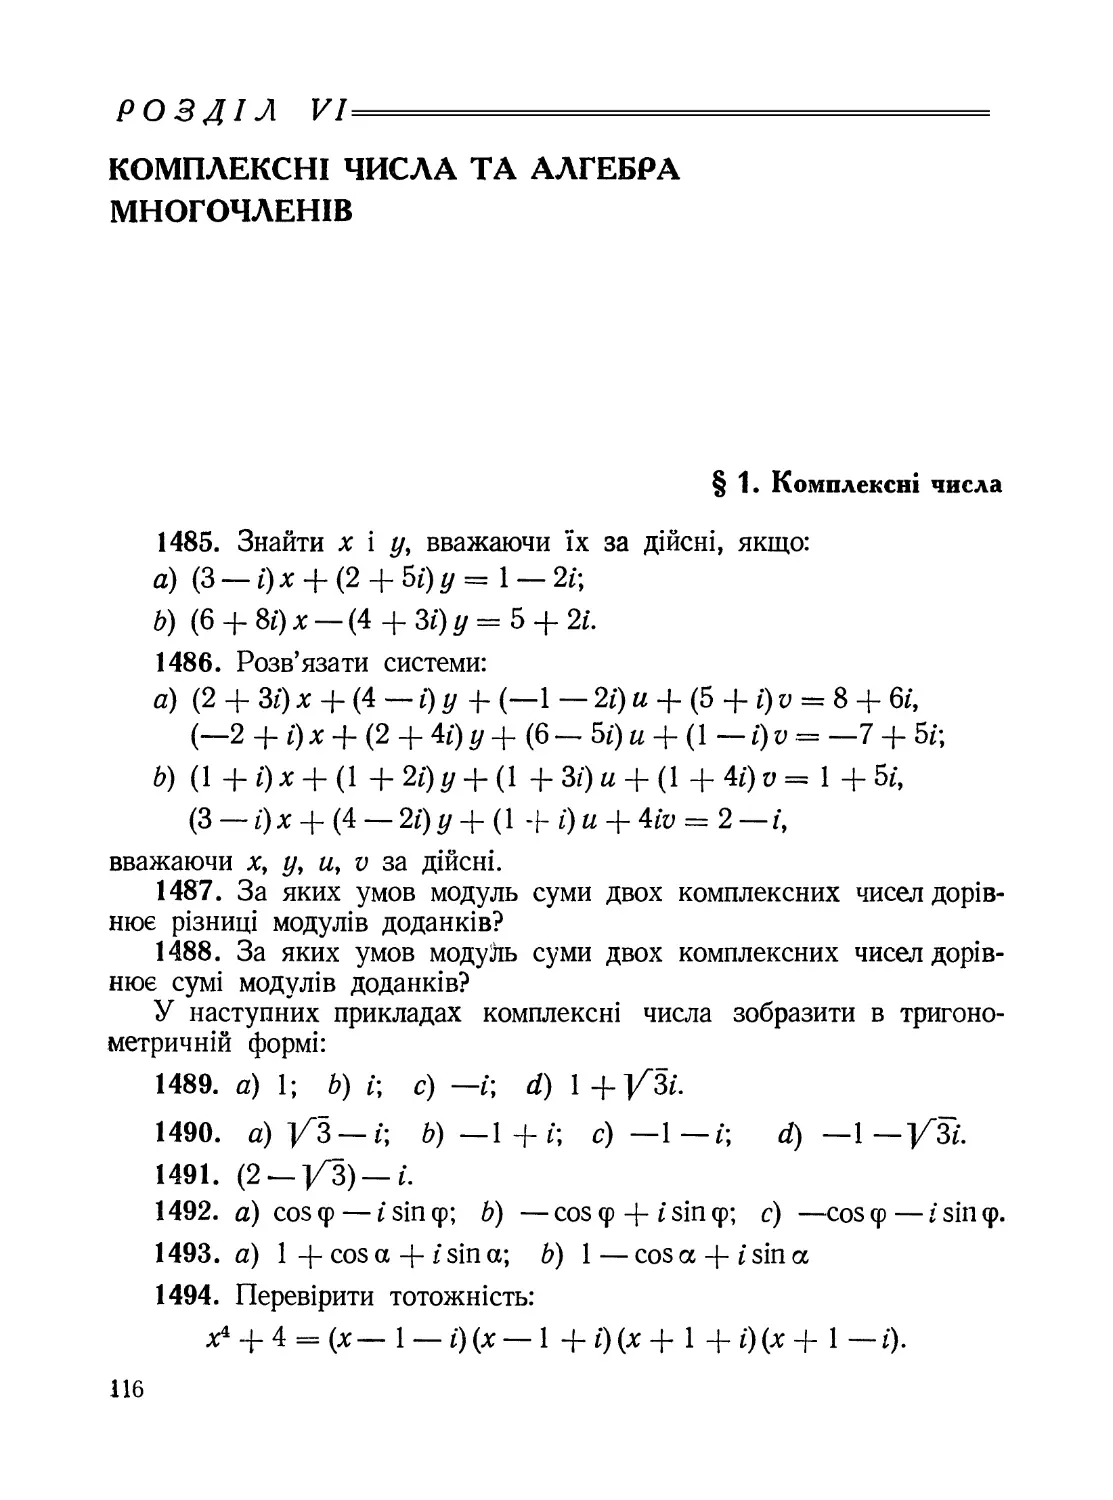 Розділ VI. Комплексні числа та алгебра многочленів